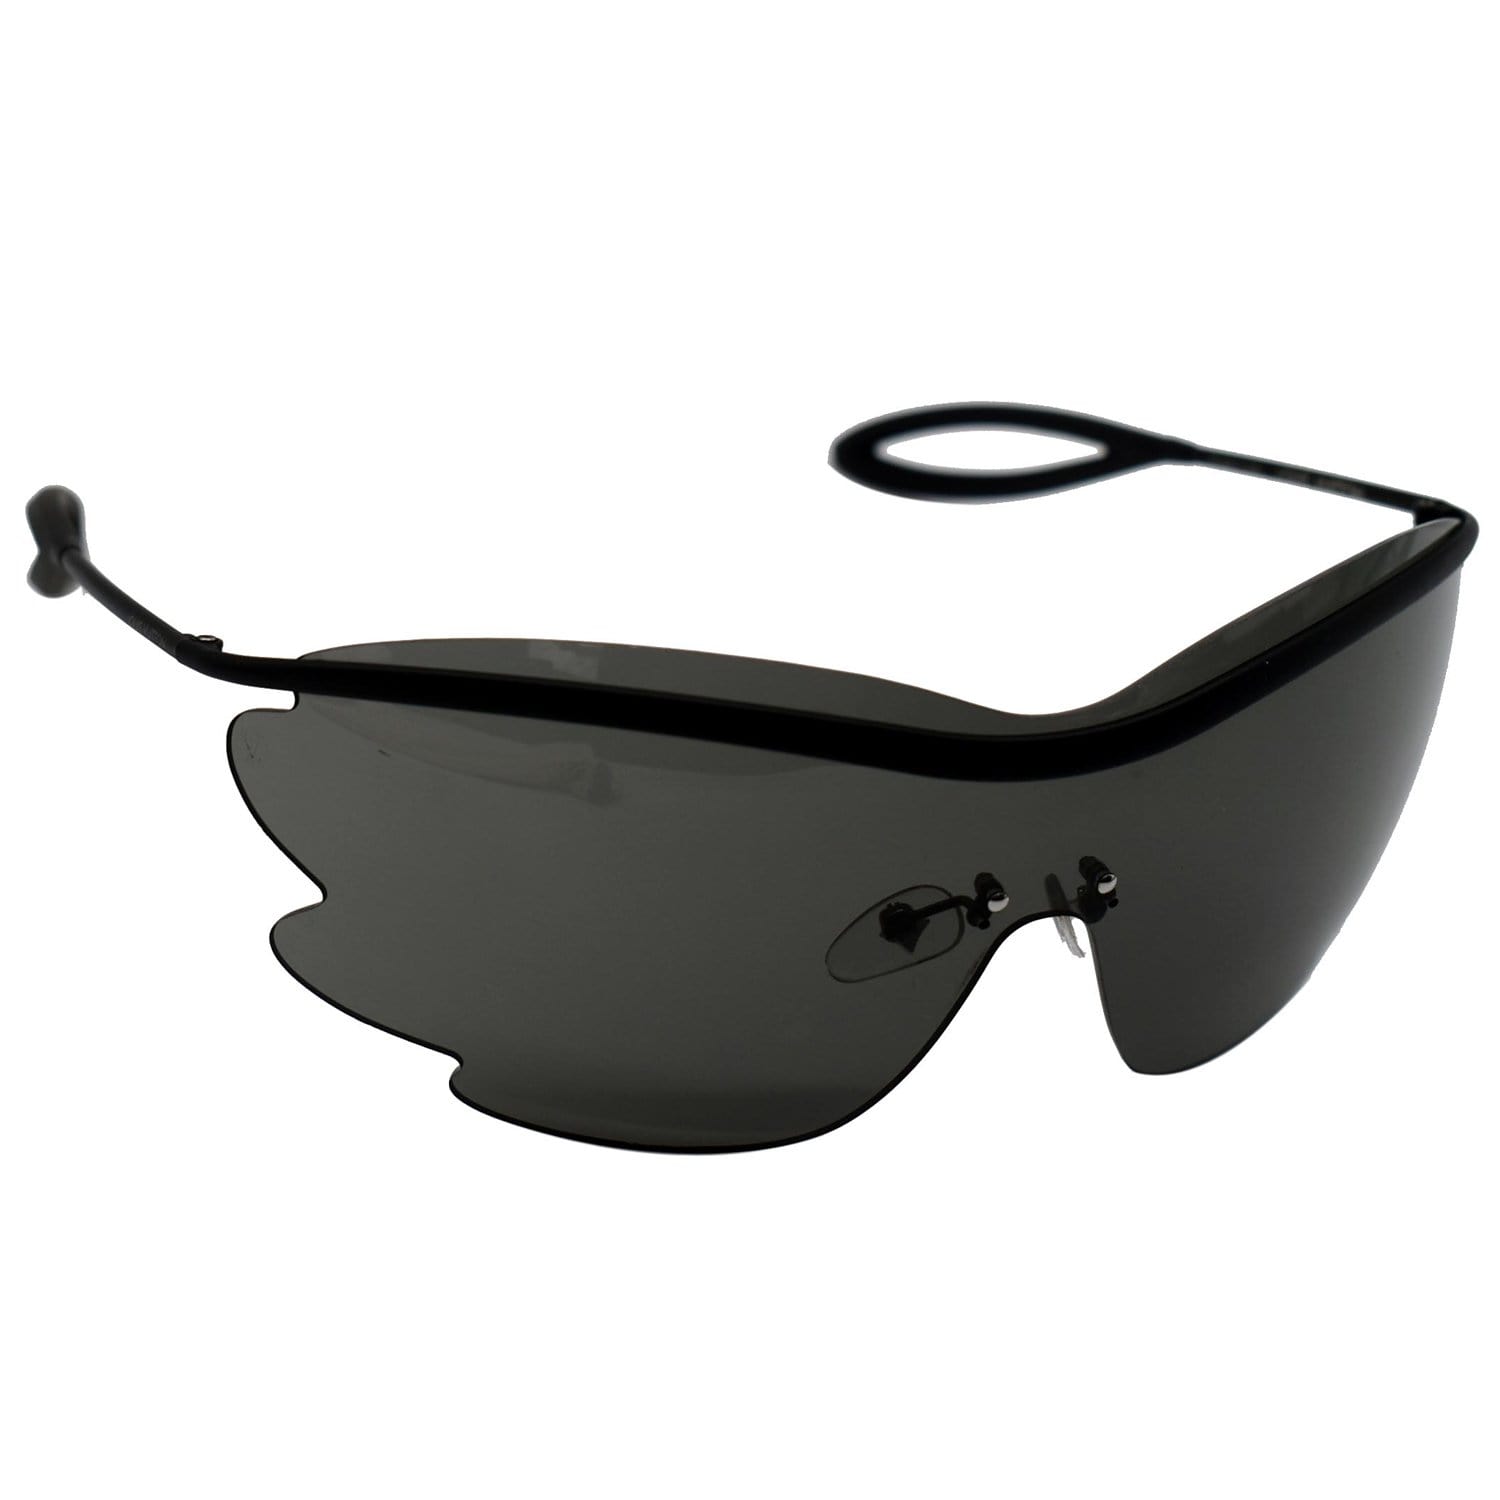 Sunglasses Louis Vuitton Black in Plastic - 32667810